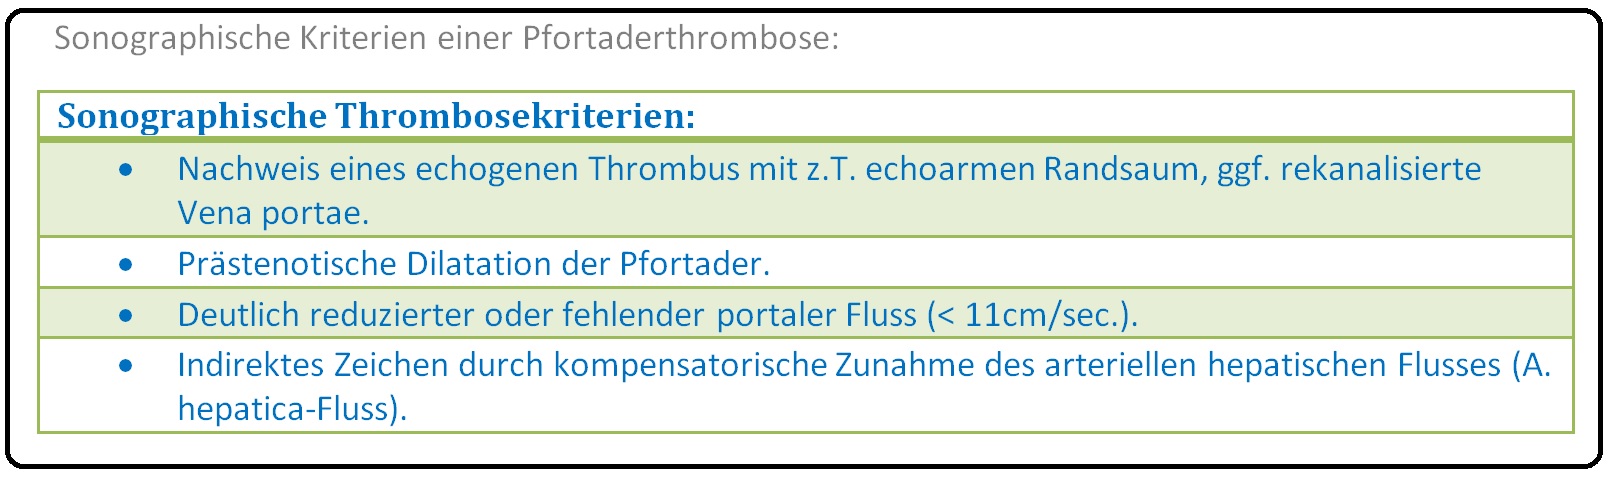 462 Sonographische Kriterien einer Pfortaderthrombose